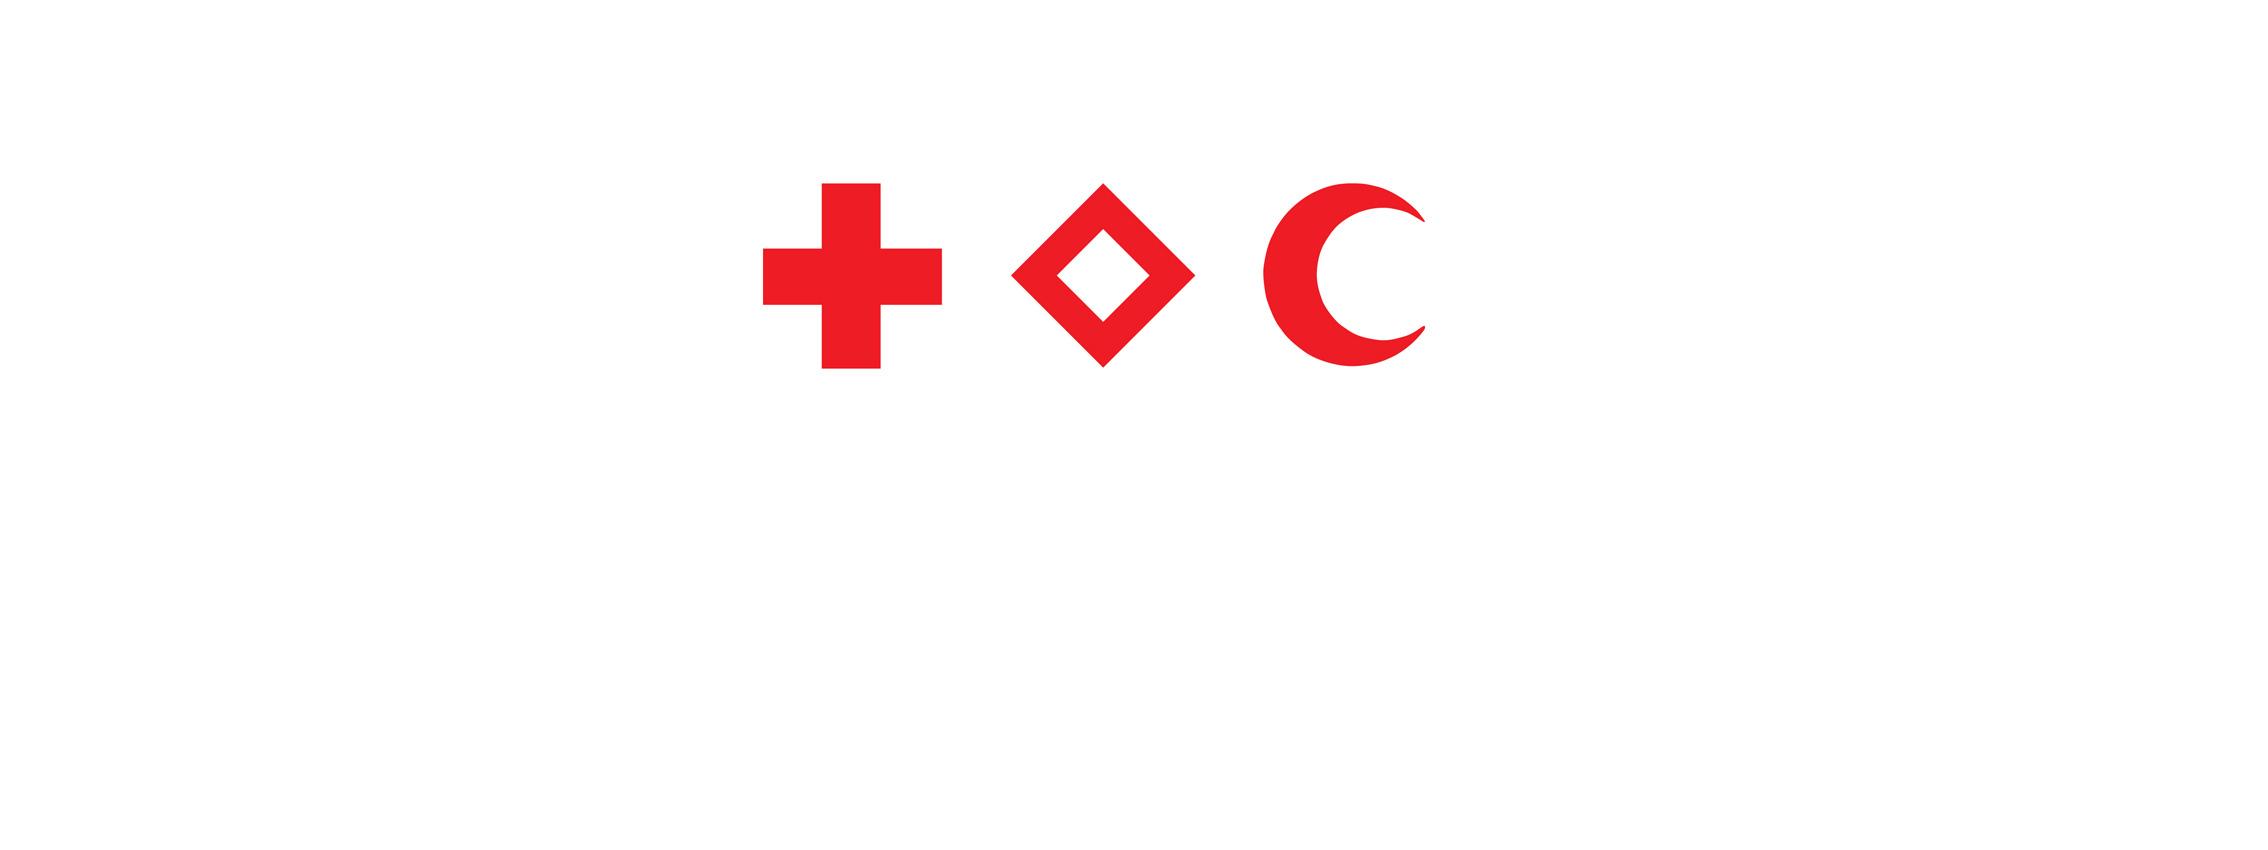 Les emblèmes du Mouvement de la Croix-Rouge et du Croissant-Rouge : la Croix-Rouge, le Cristal-Rouge et le Croissant-Rouge